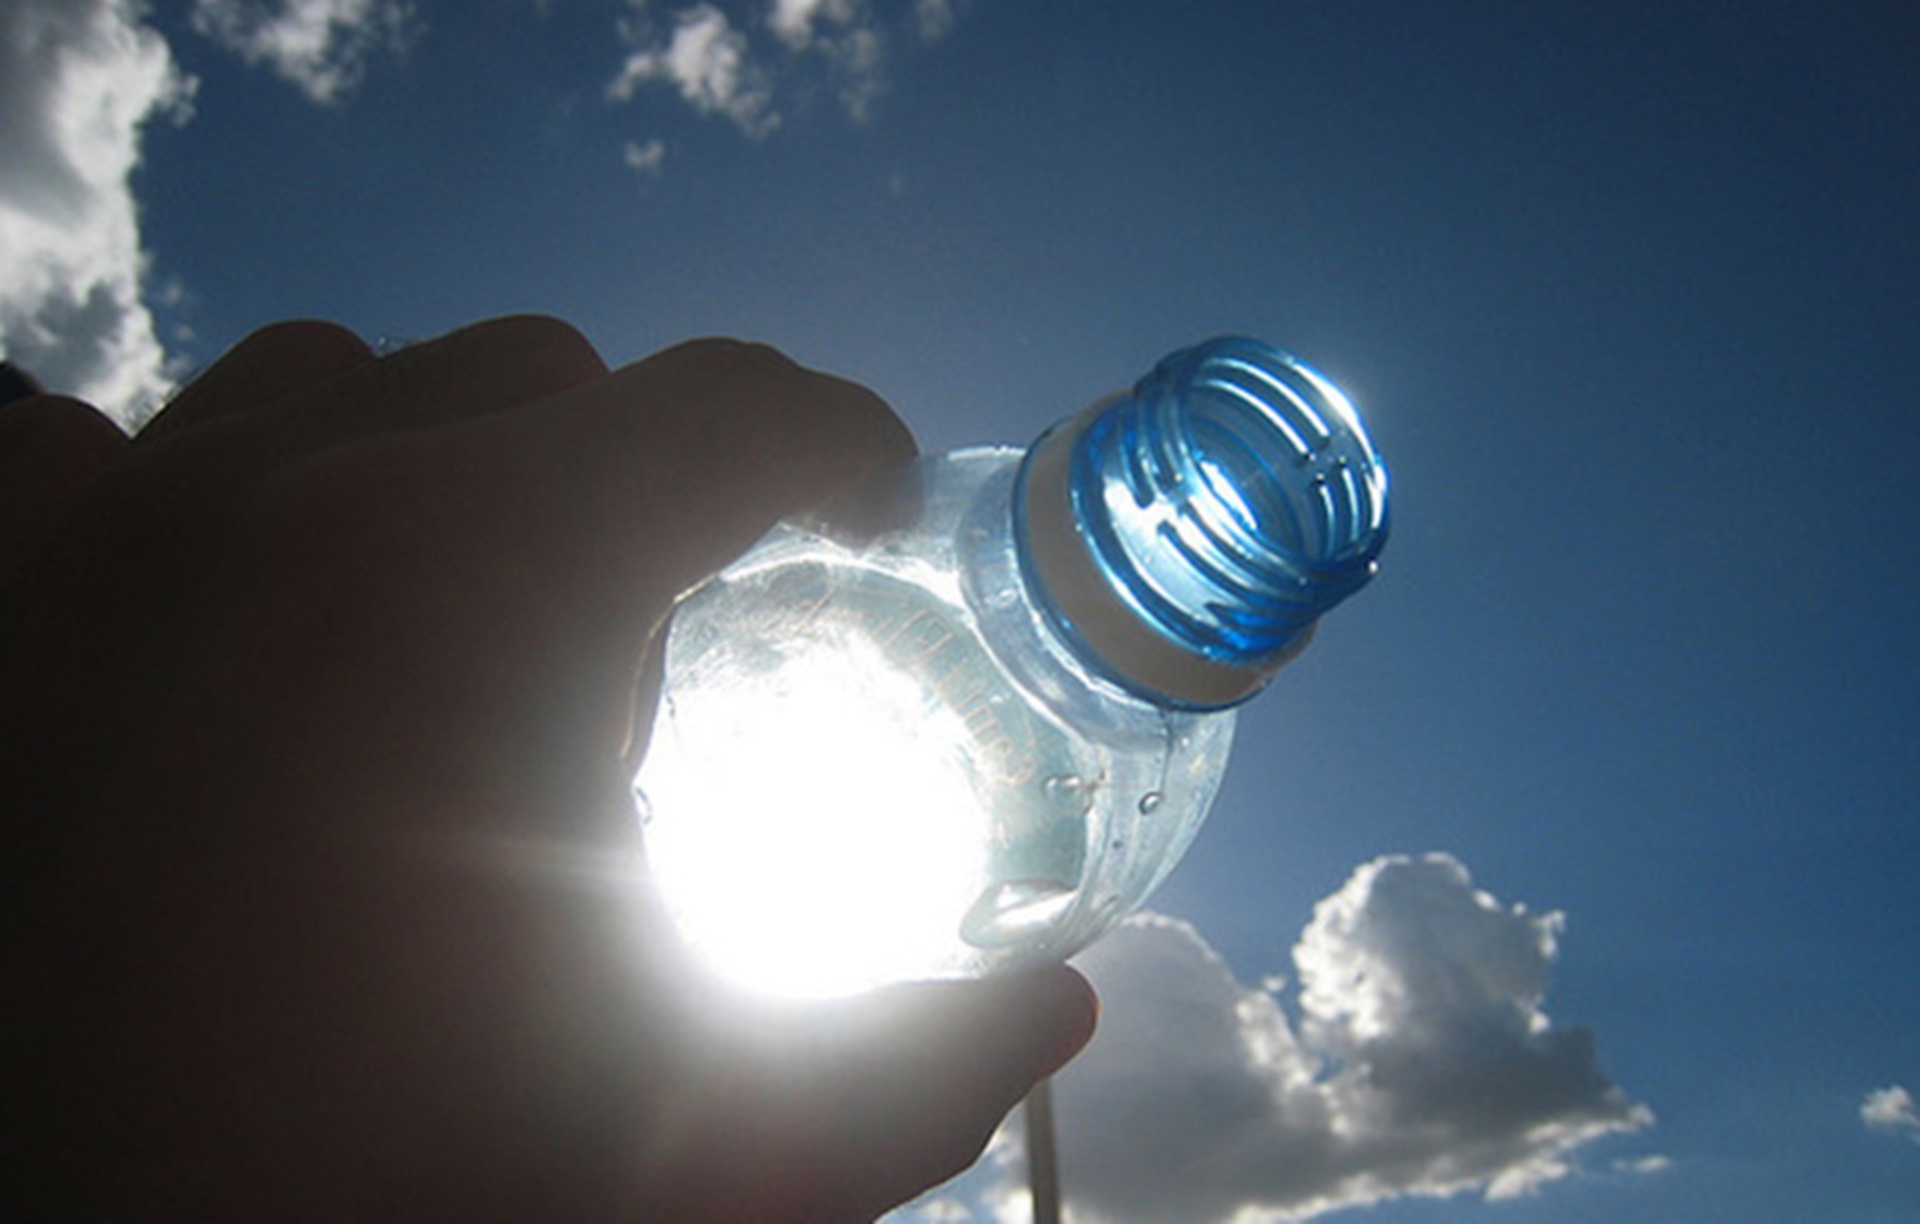 Αυτός είναι ο λόγος που δεν πρέπει να πίνετε νερό από πλαστικά μπουκάλια εκτεθειμένα στη ζέστη